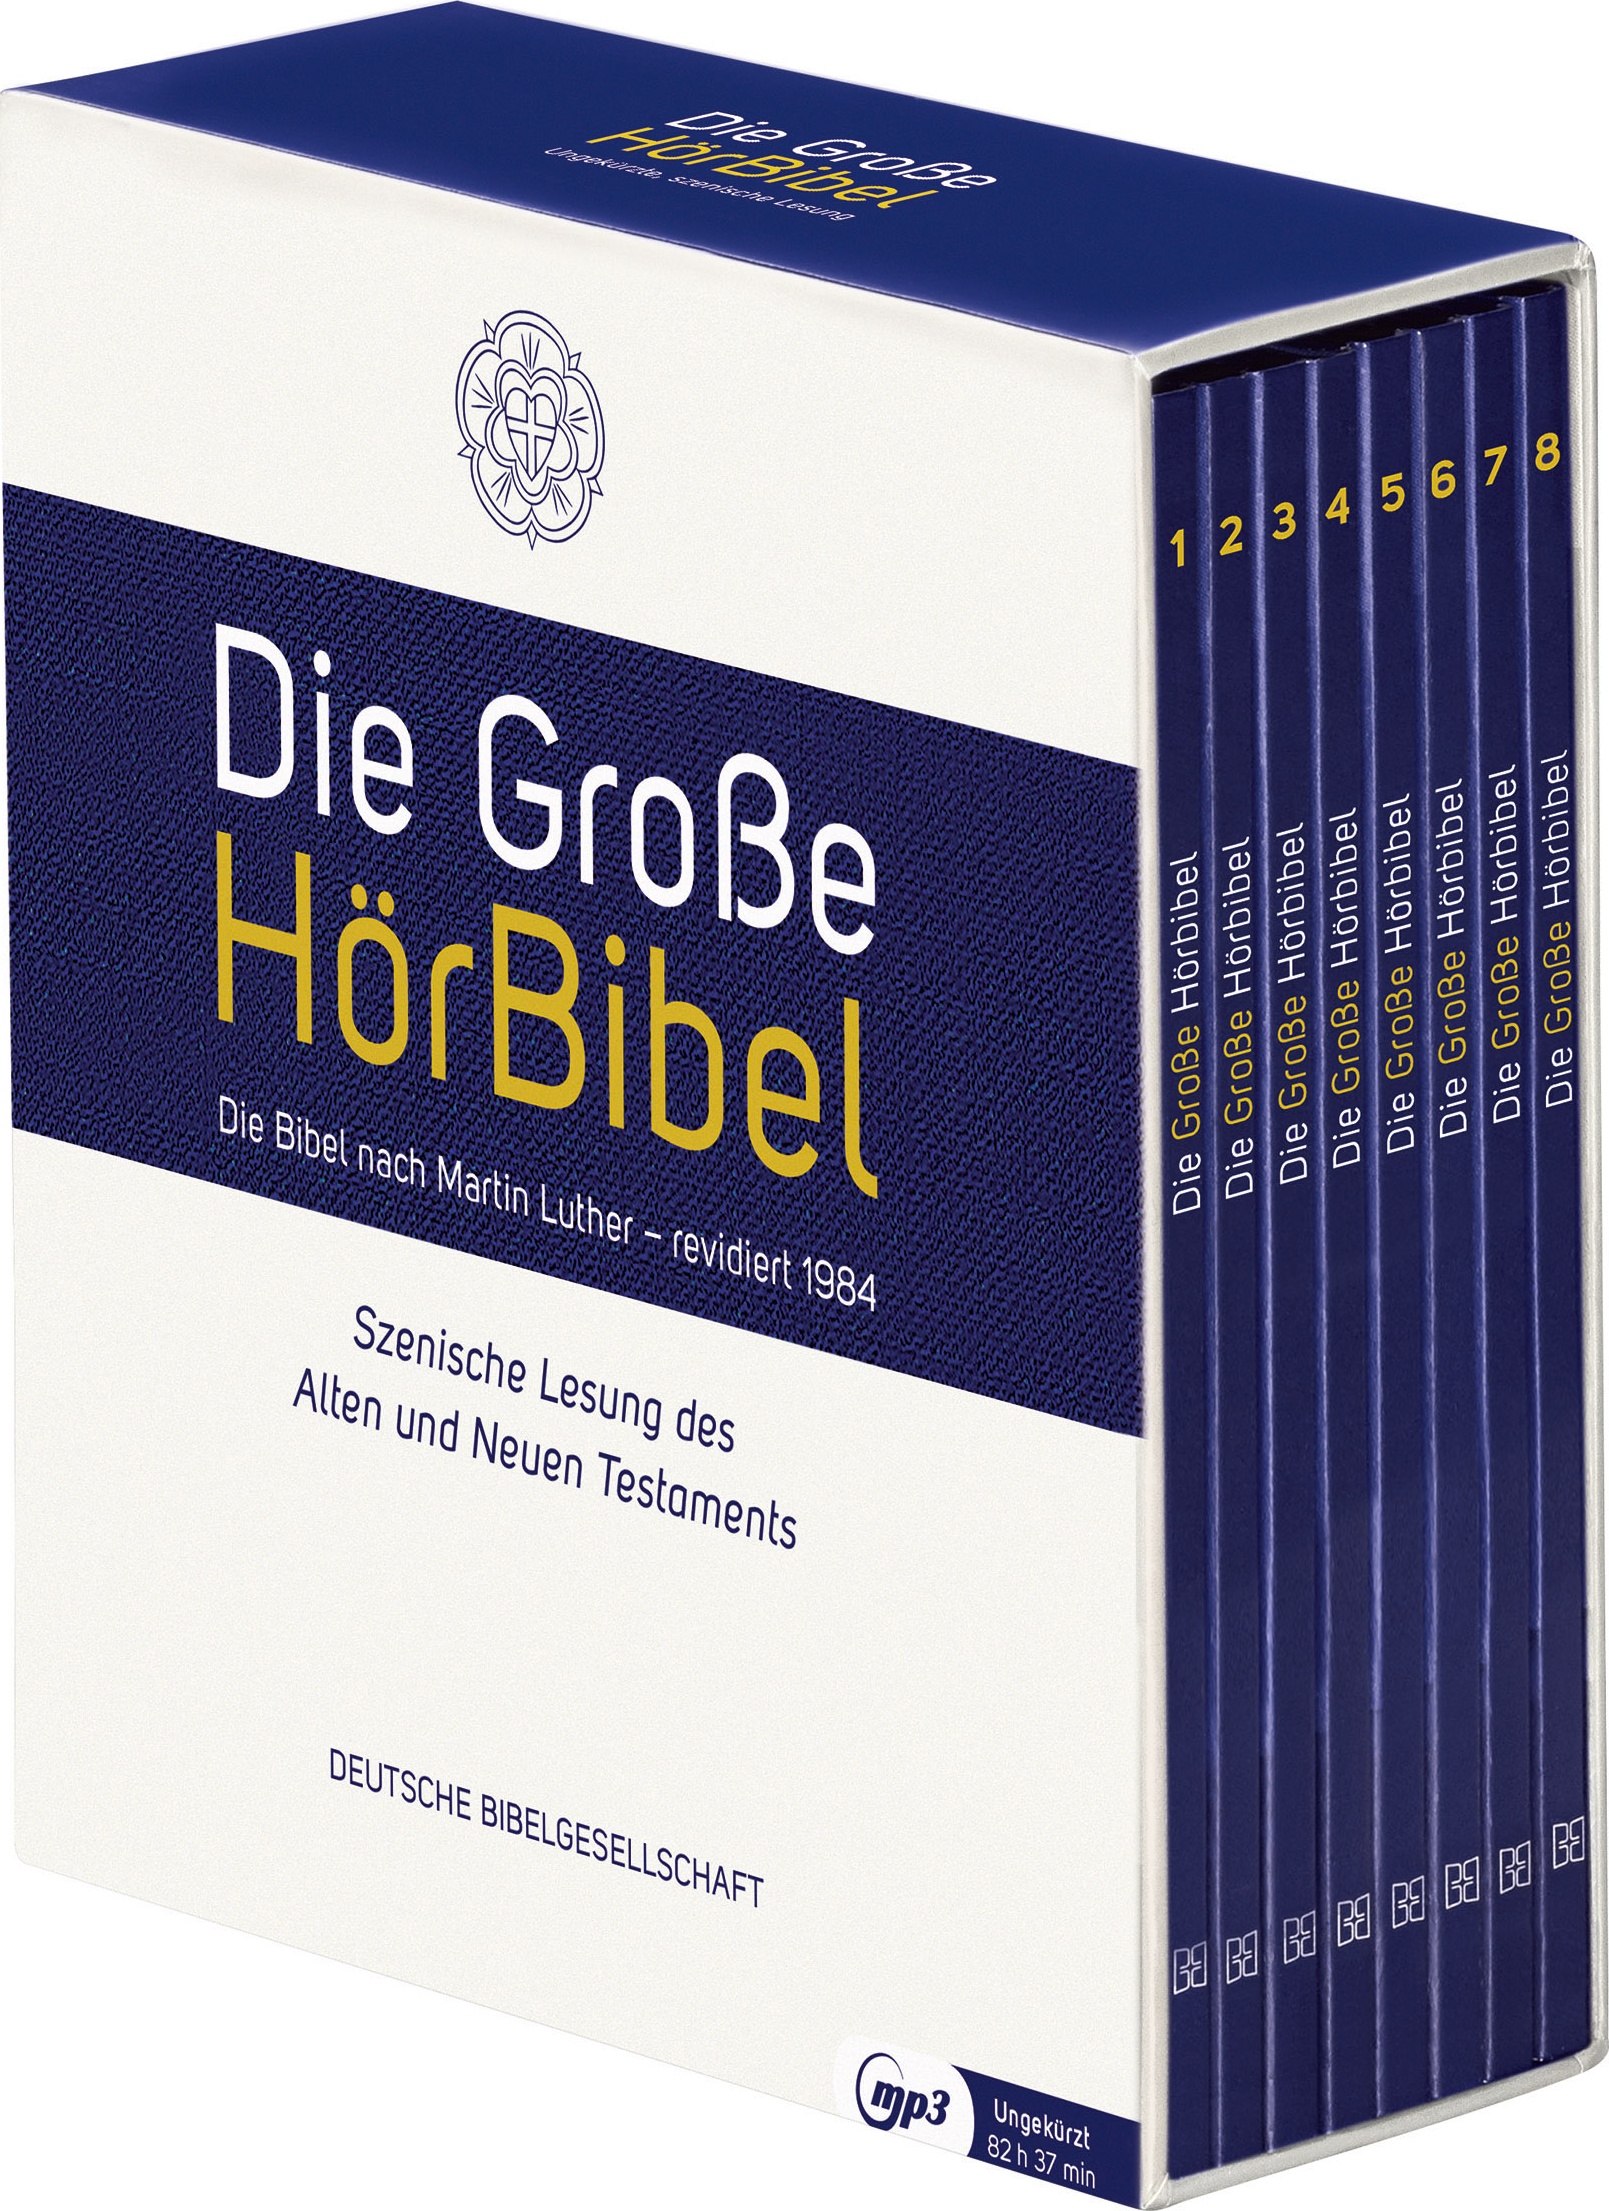 Die grosse Hörbibel - Luther rev. 1984 (8 MP3-CDs im Digi-Pack) - Szenische Lesungen des Alten und Neuen Testaments - Laufzeit c